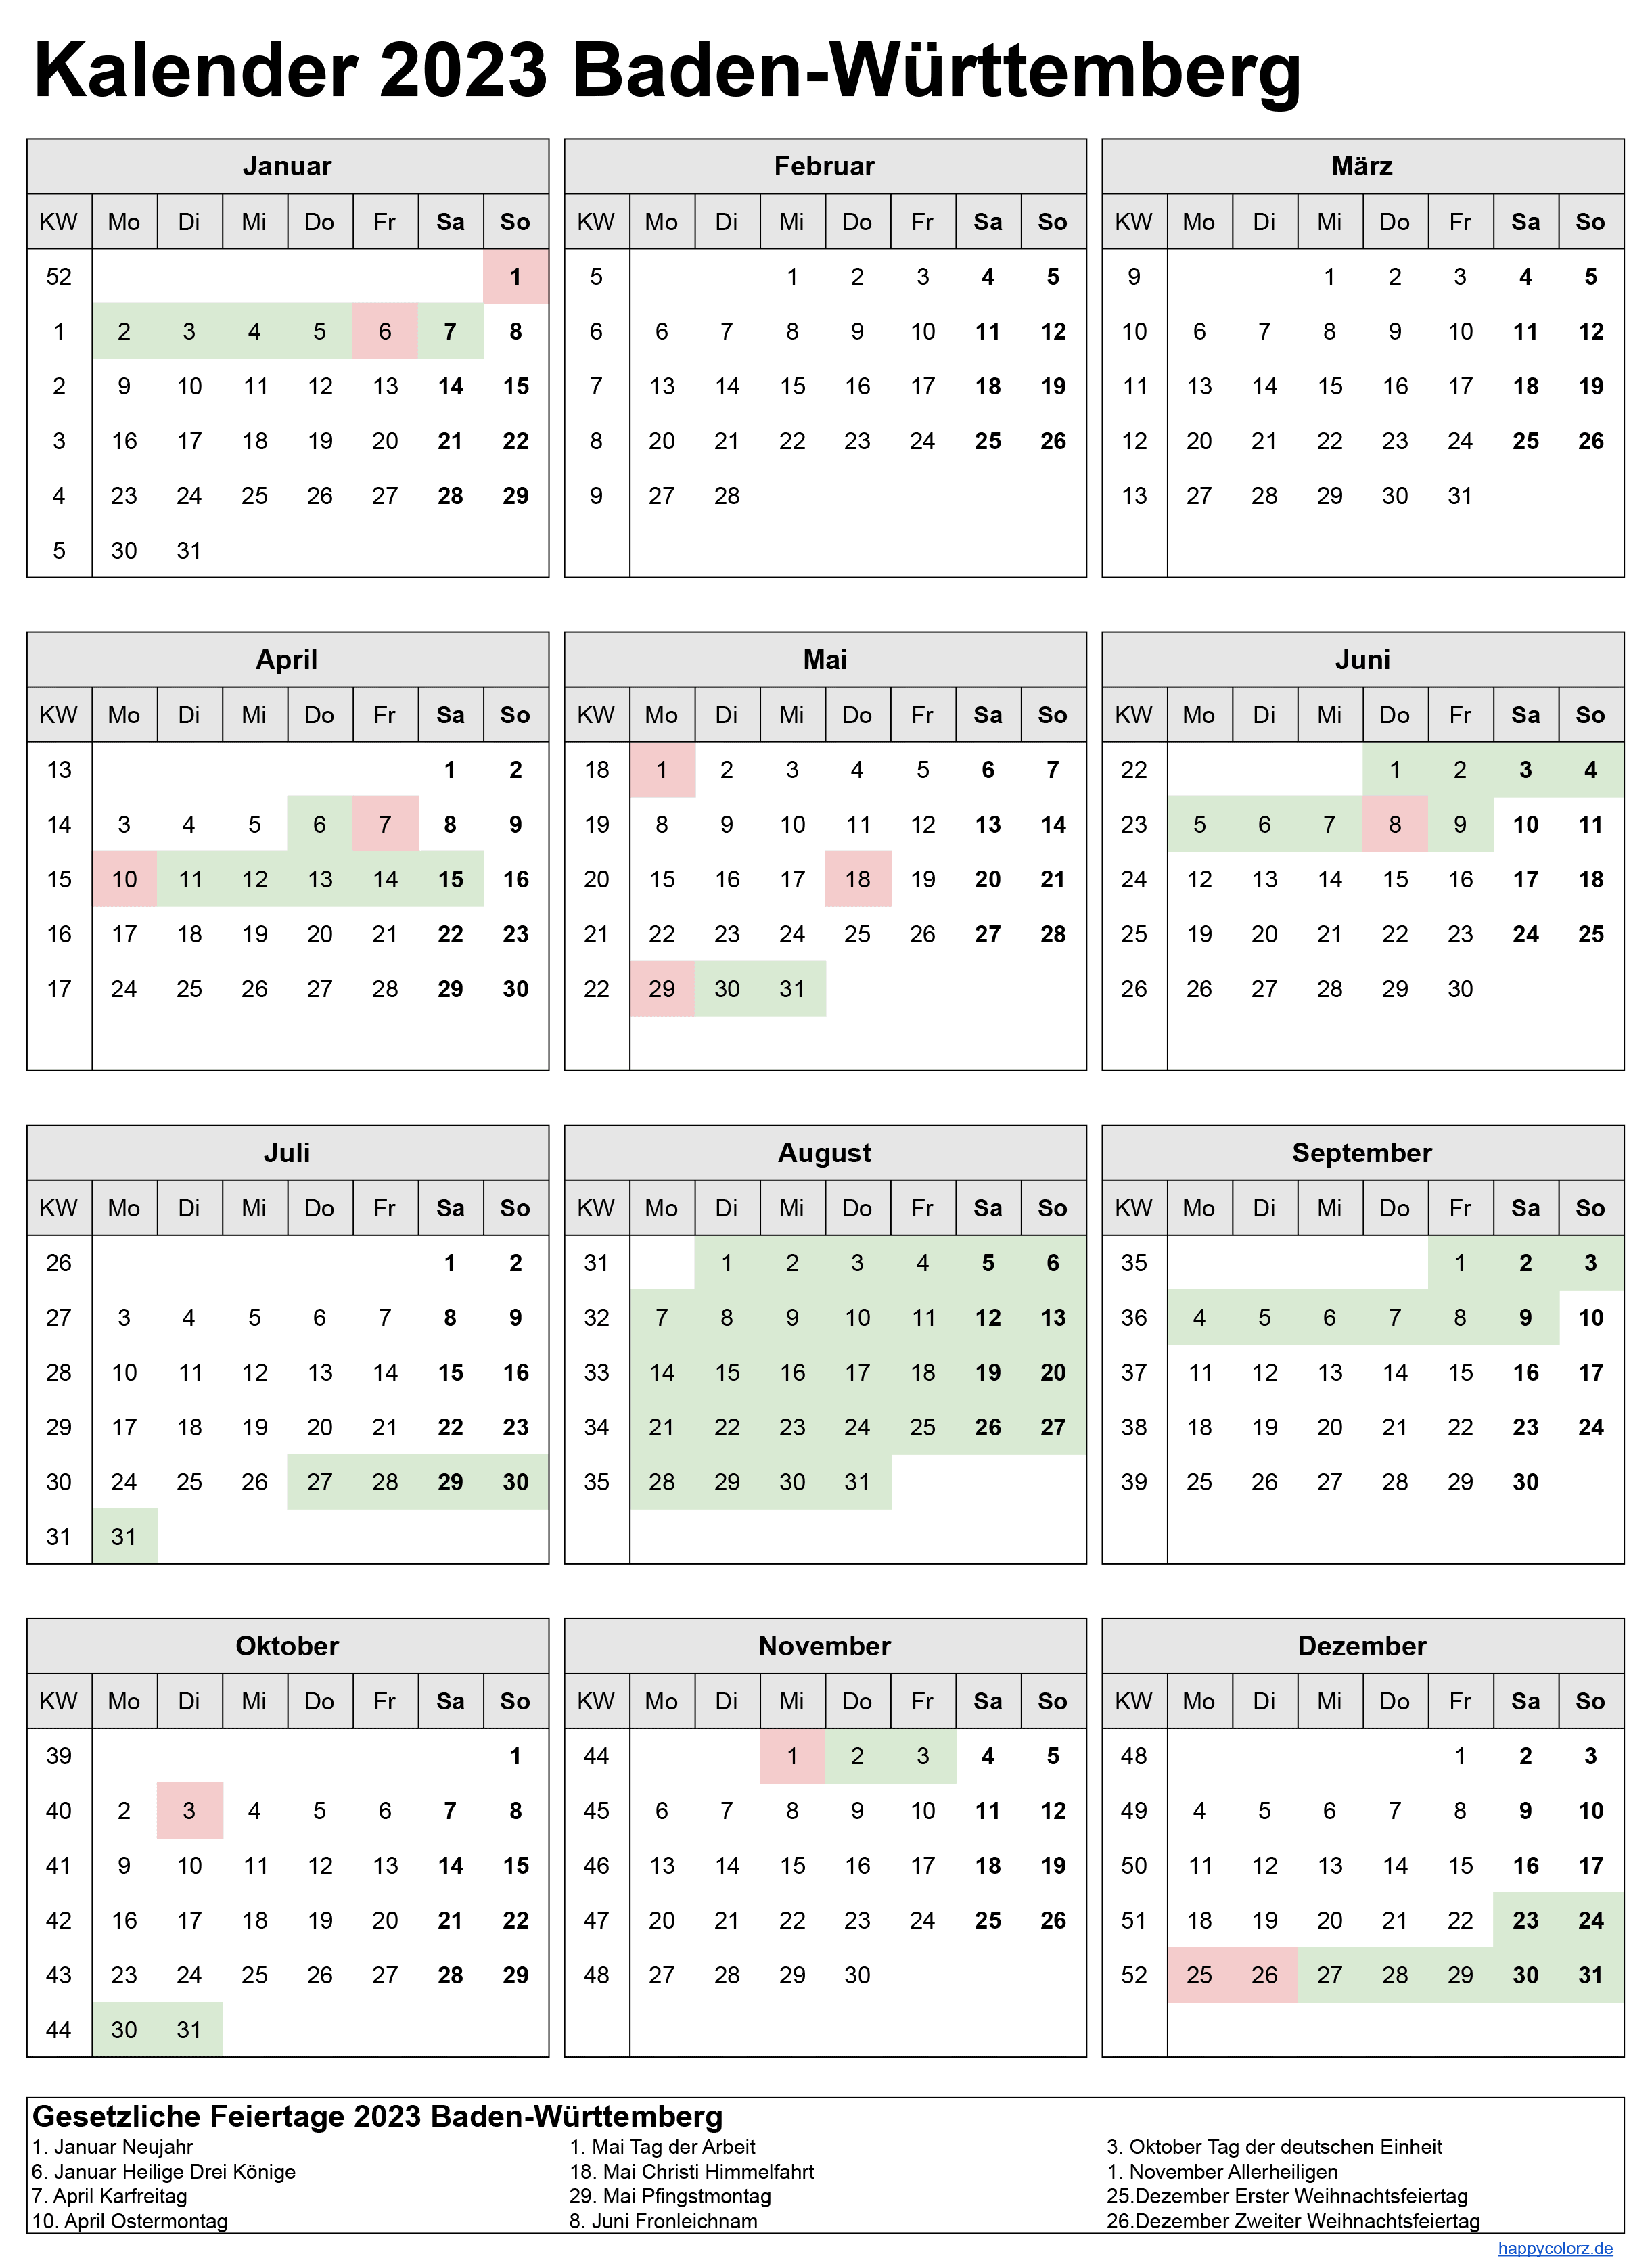 Kalender 2023 Baden-Württemberg zum Ausdrucken